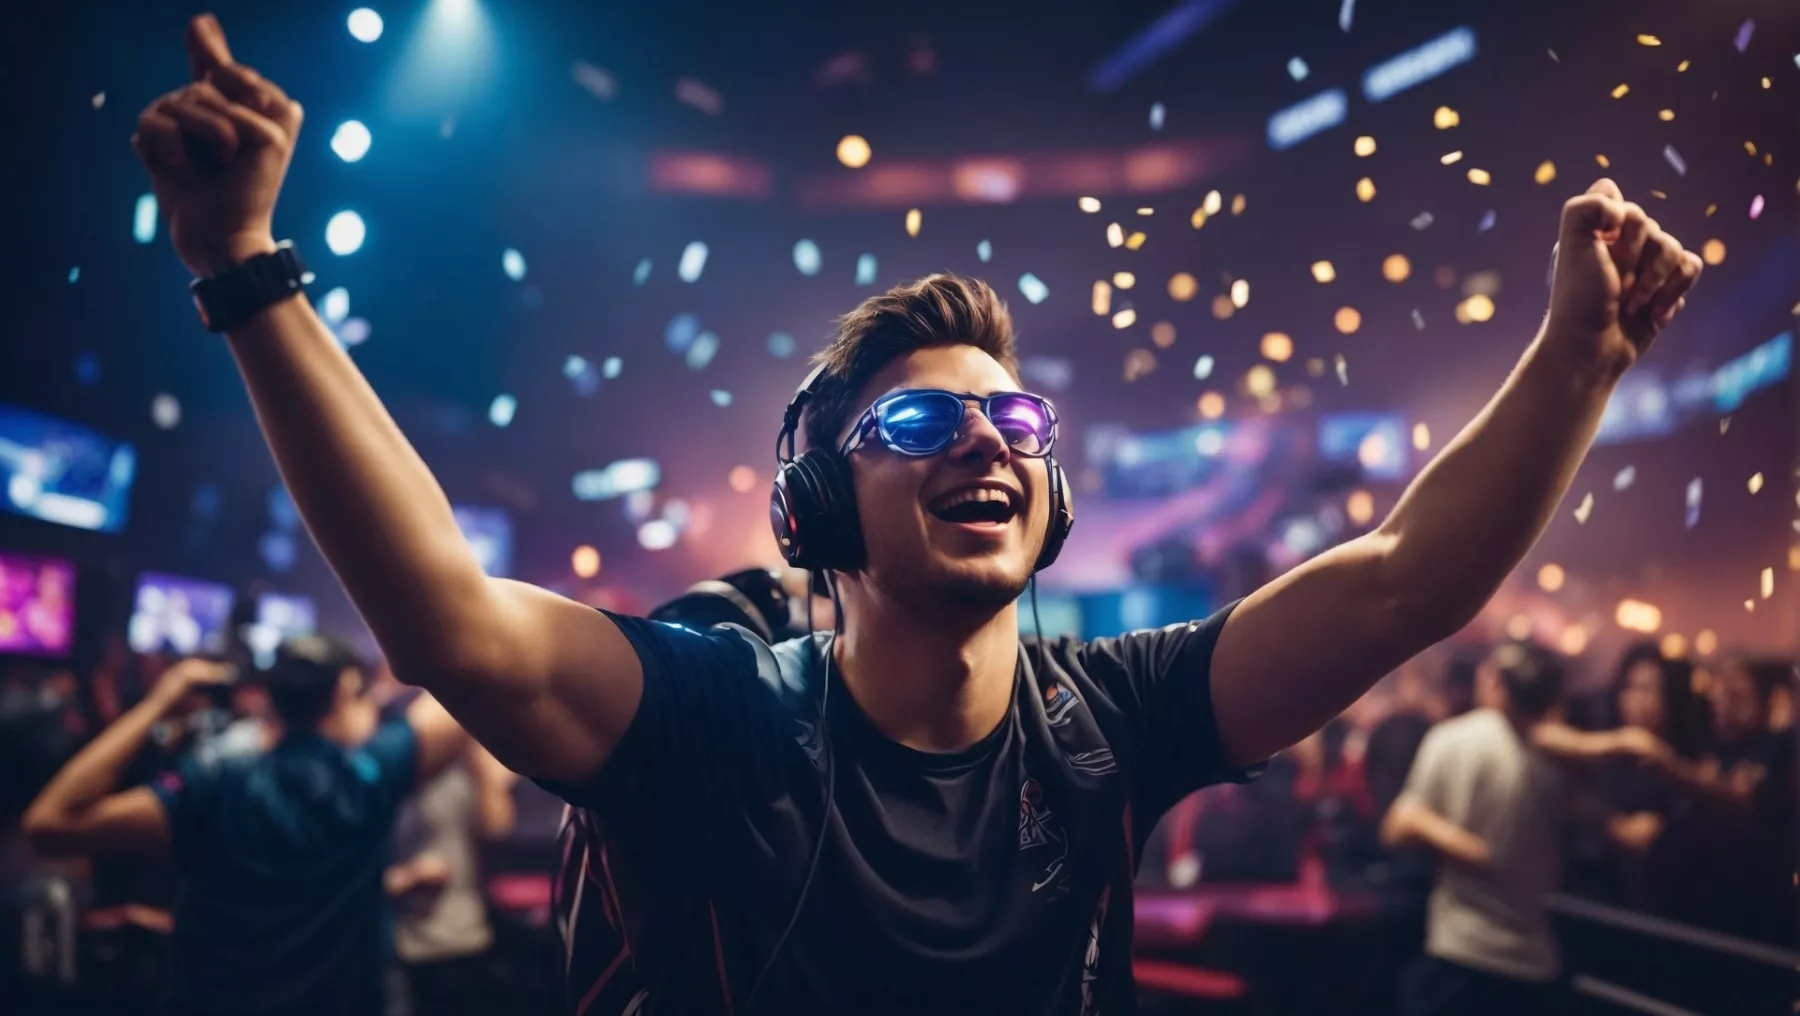 AI-generiertes Bild mit einem jungen Mann mit Kopfhörern, der sich in einer Partyszene offensichtlich freut und feiert